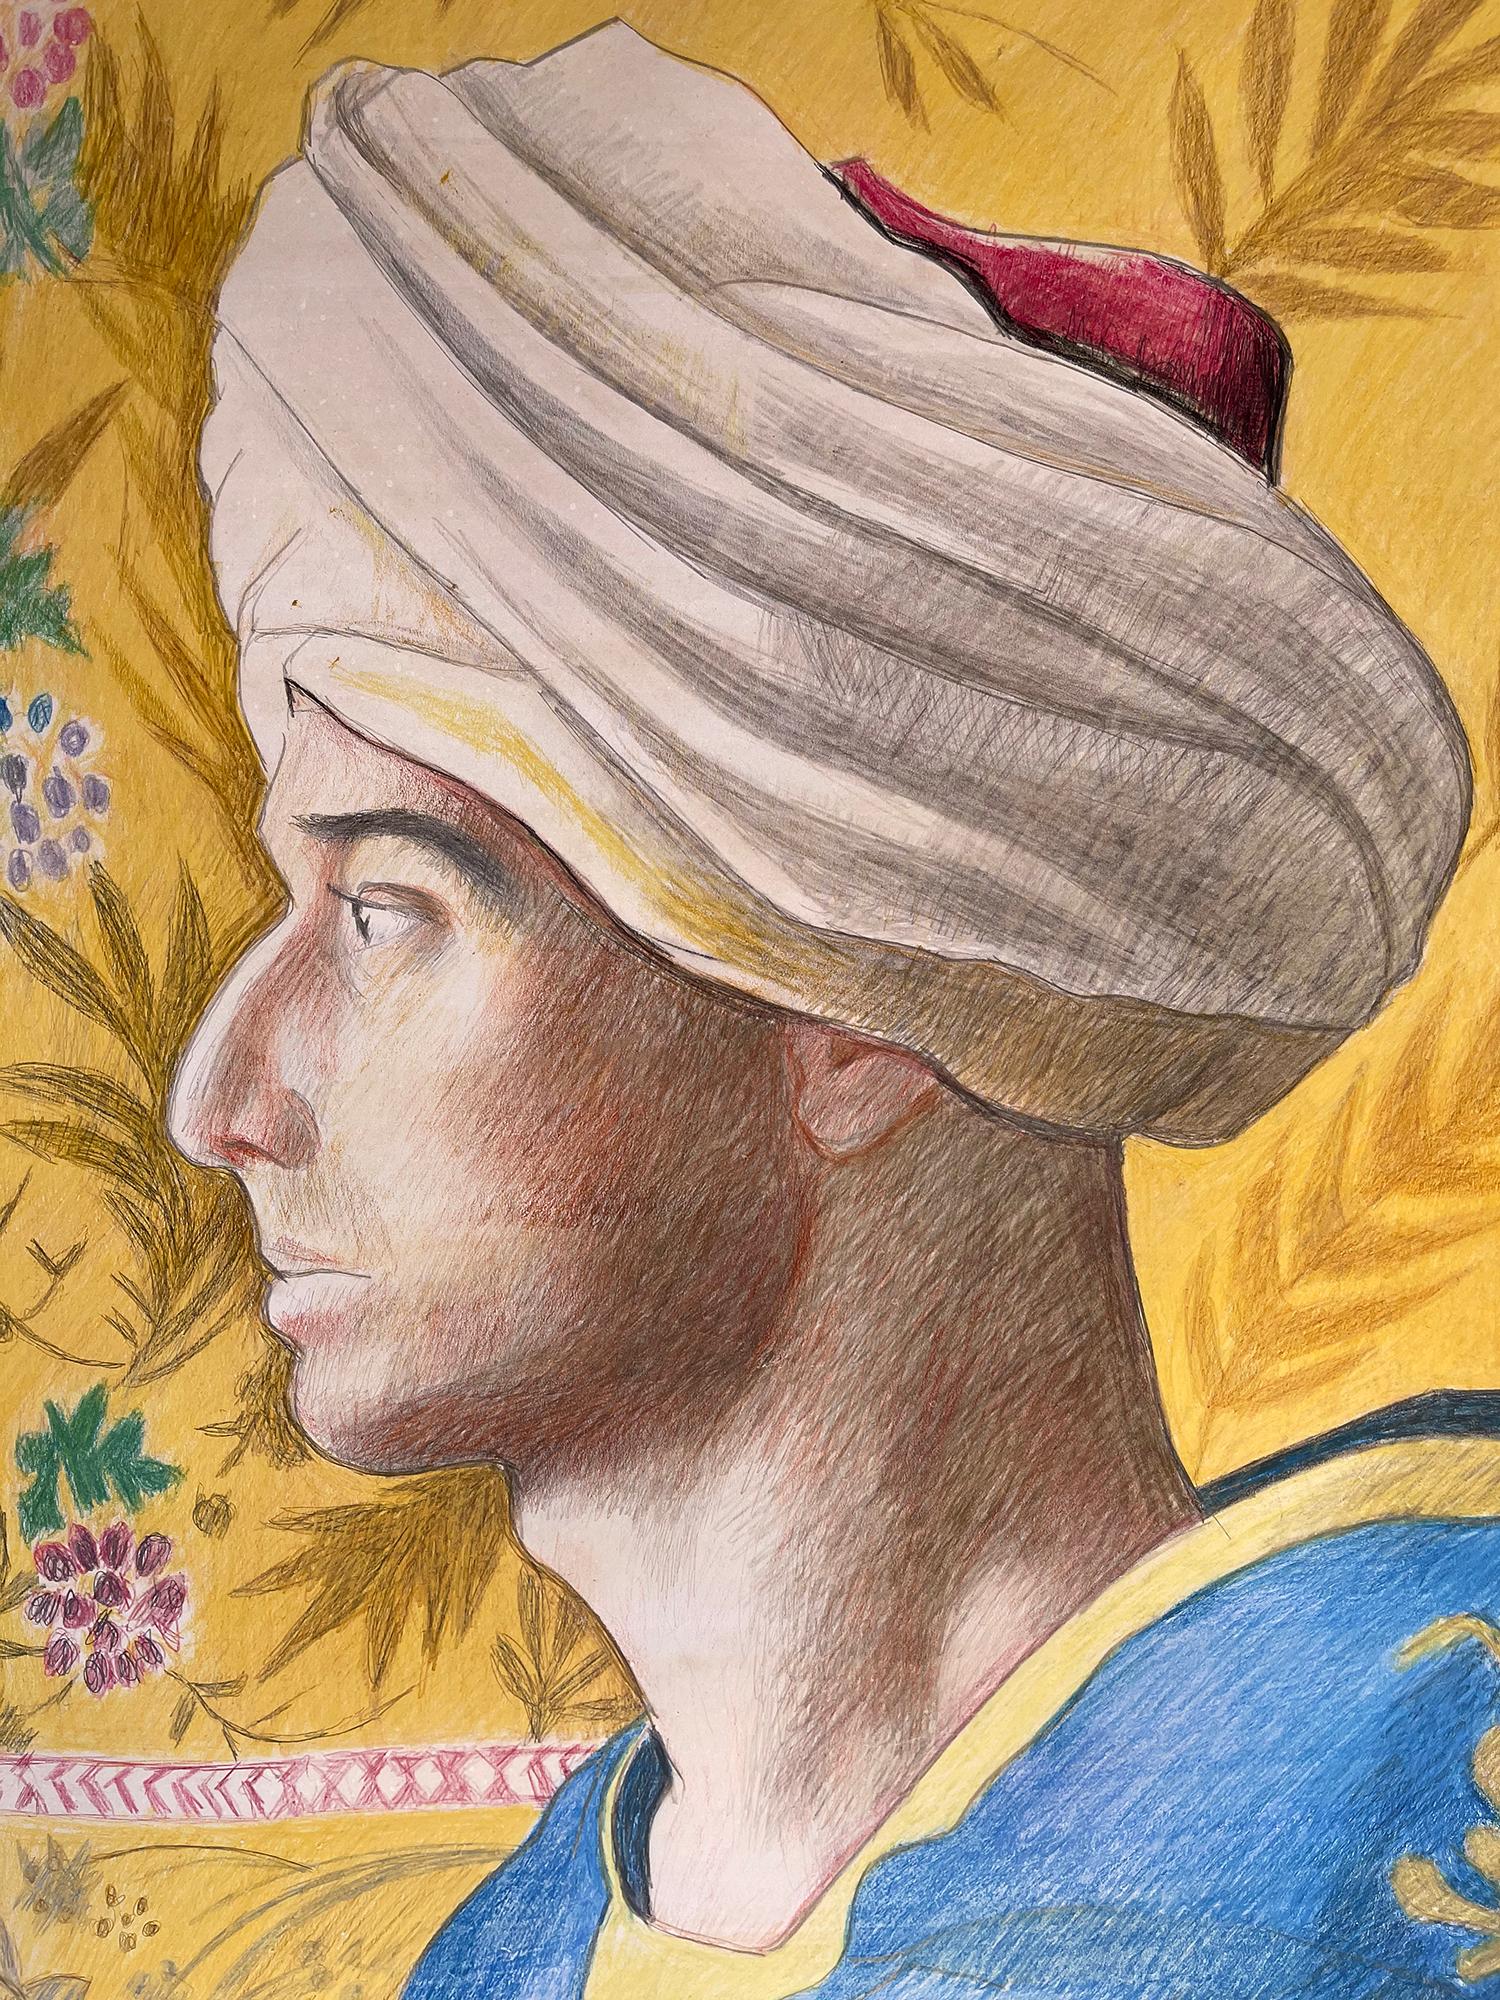 Porträt in primären Blau- und Gelbtönen, vielleicht eines persischen Mannes.  Er befindet sich im Profil vor einem dekorativen gelben Hintergrund mit floralen Elementen.  Das Werk entstand zwei Jahre vor dem Tod des Künstlers, enthielt jedoch viele